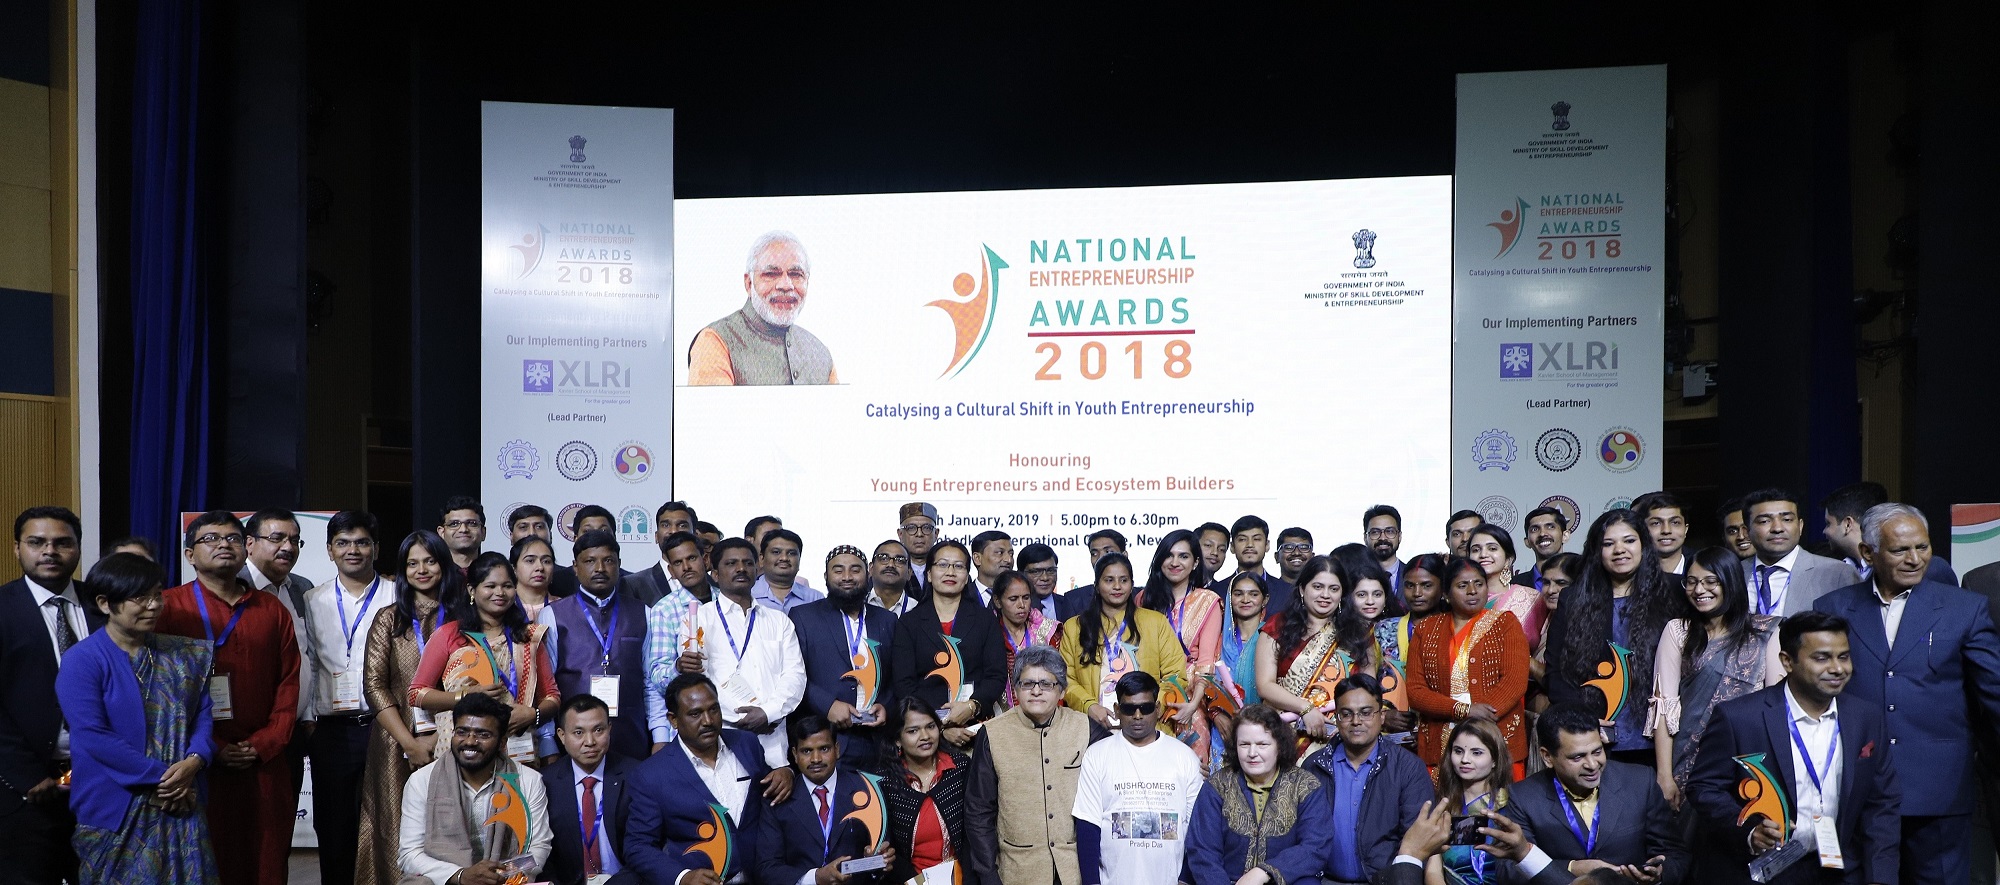 National Entrepreneurship Awards 2018 winners